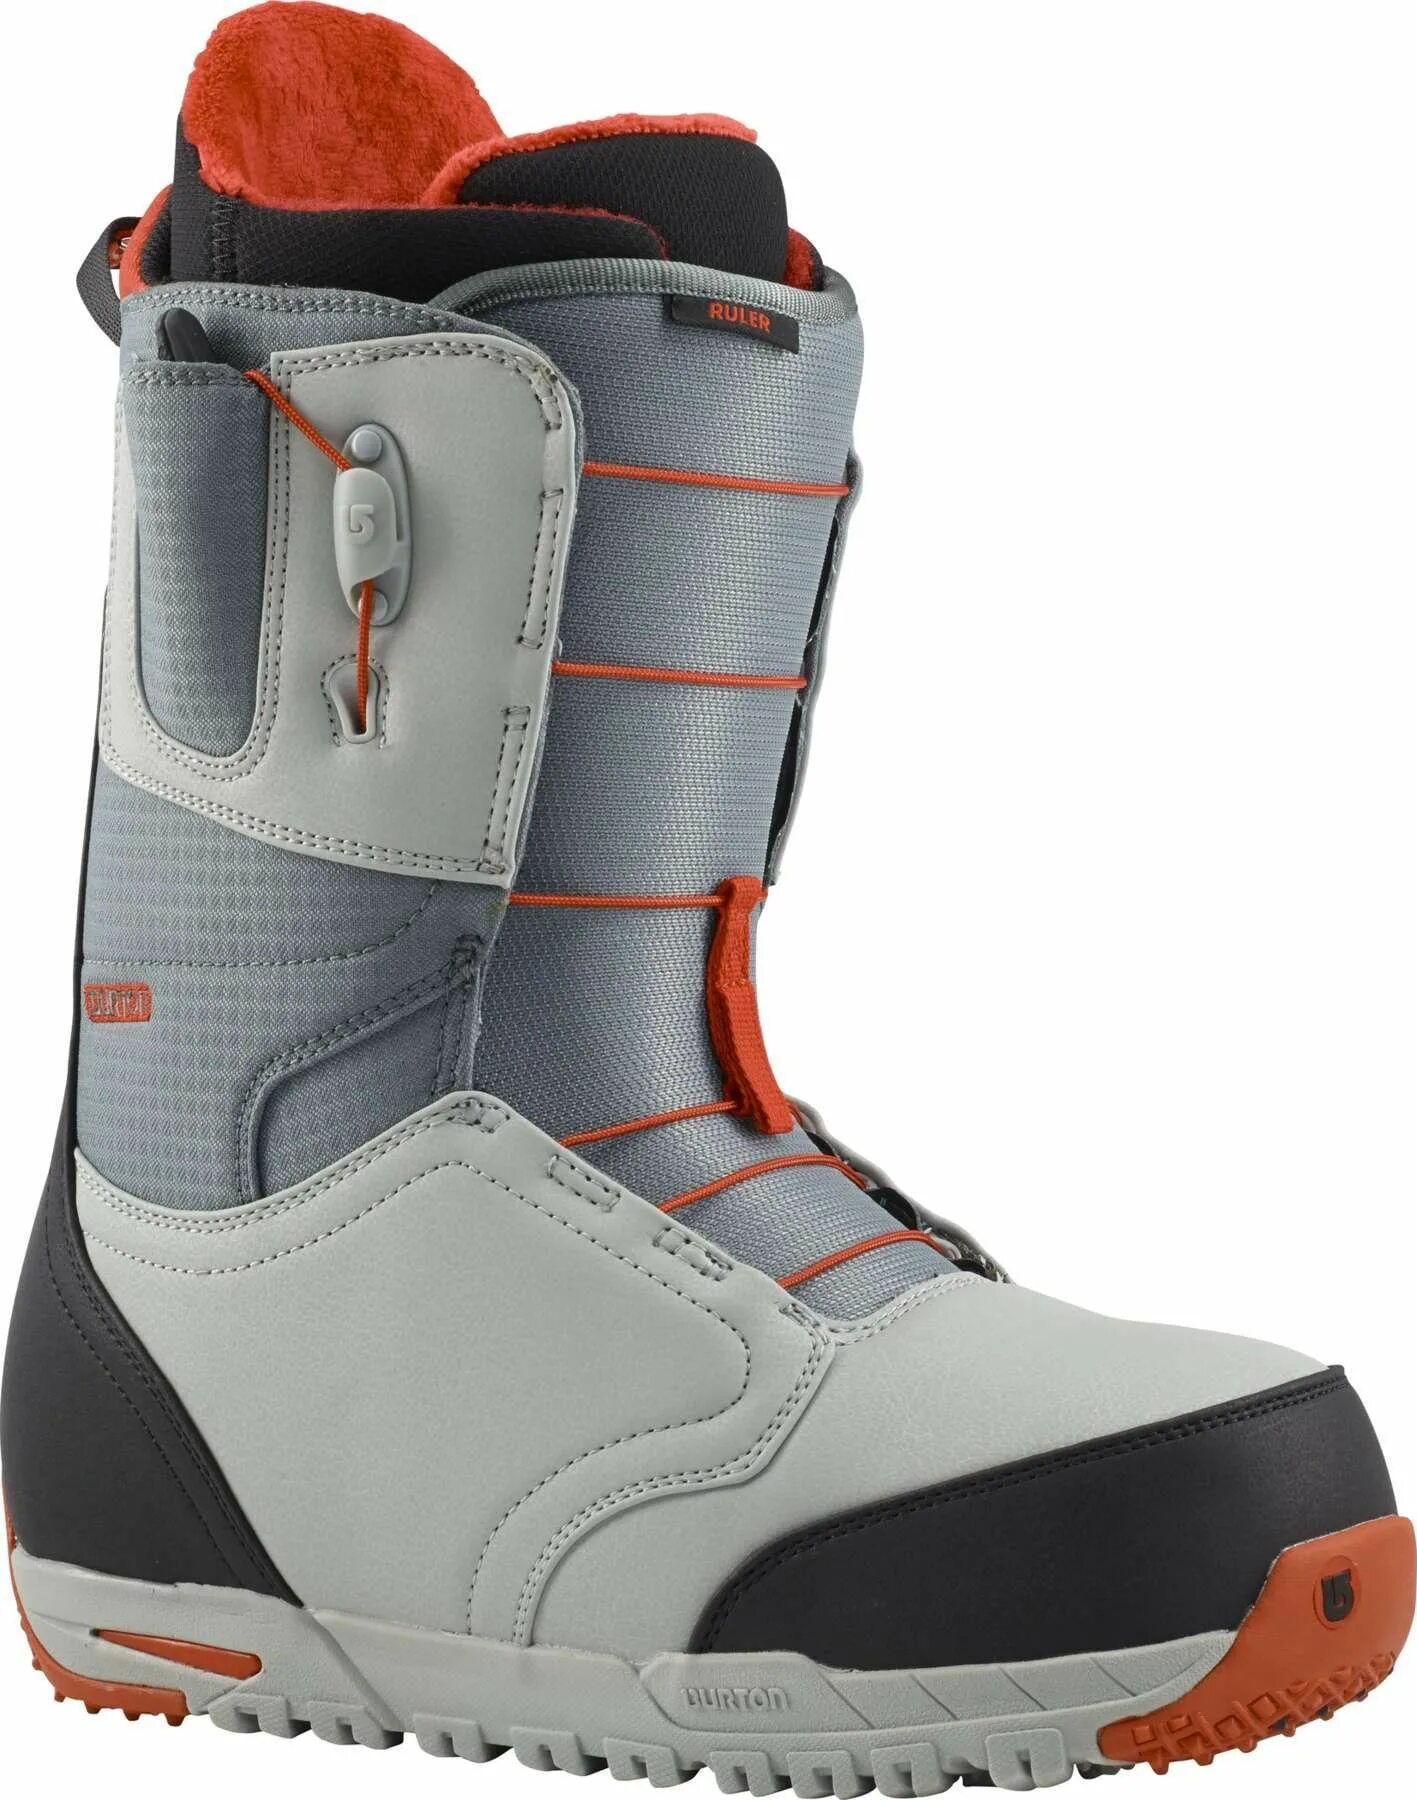 Burton ruler. Ботинки сноубордические мужские Burton Ruler. Сноубордические ботинки Burton Snowboard Boots 2018/2020. Ботинки для сноуборда Burton Ruler 2014. Сноуборд ботинки Бертона Руллер.